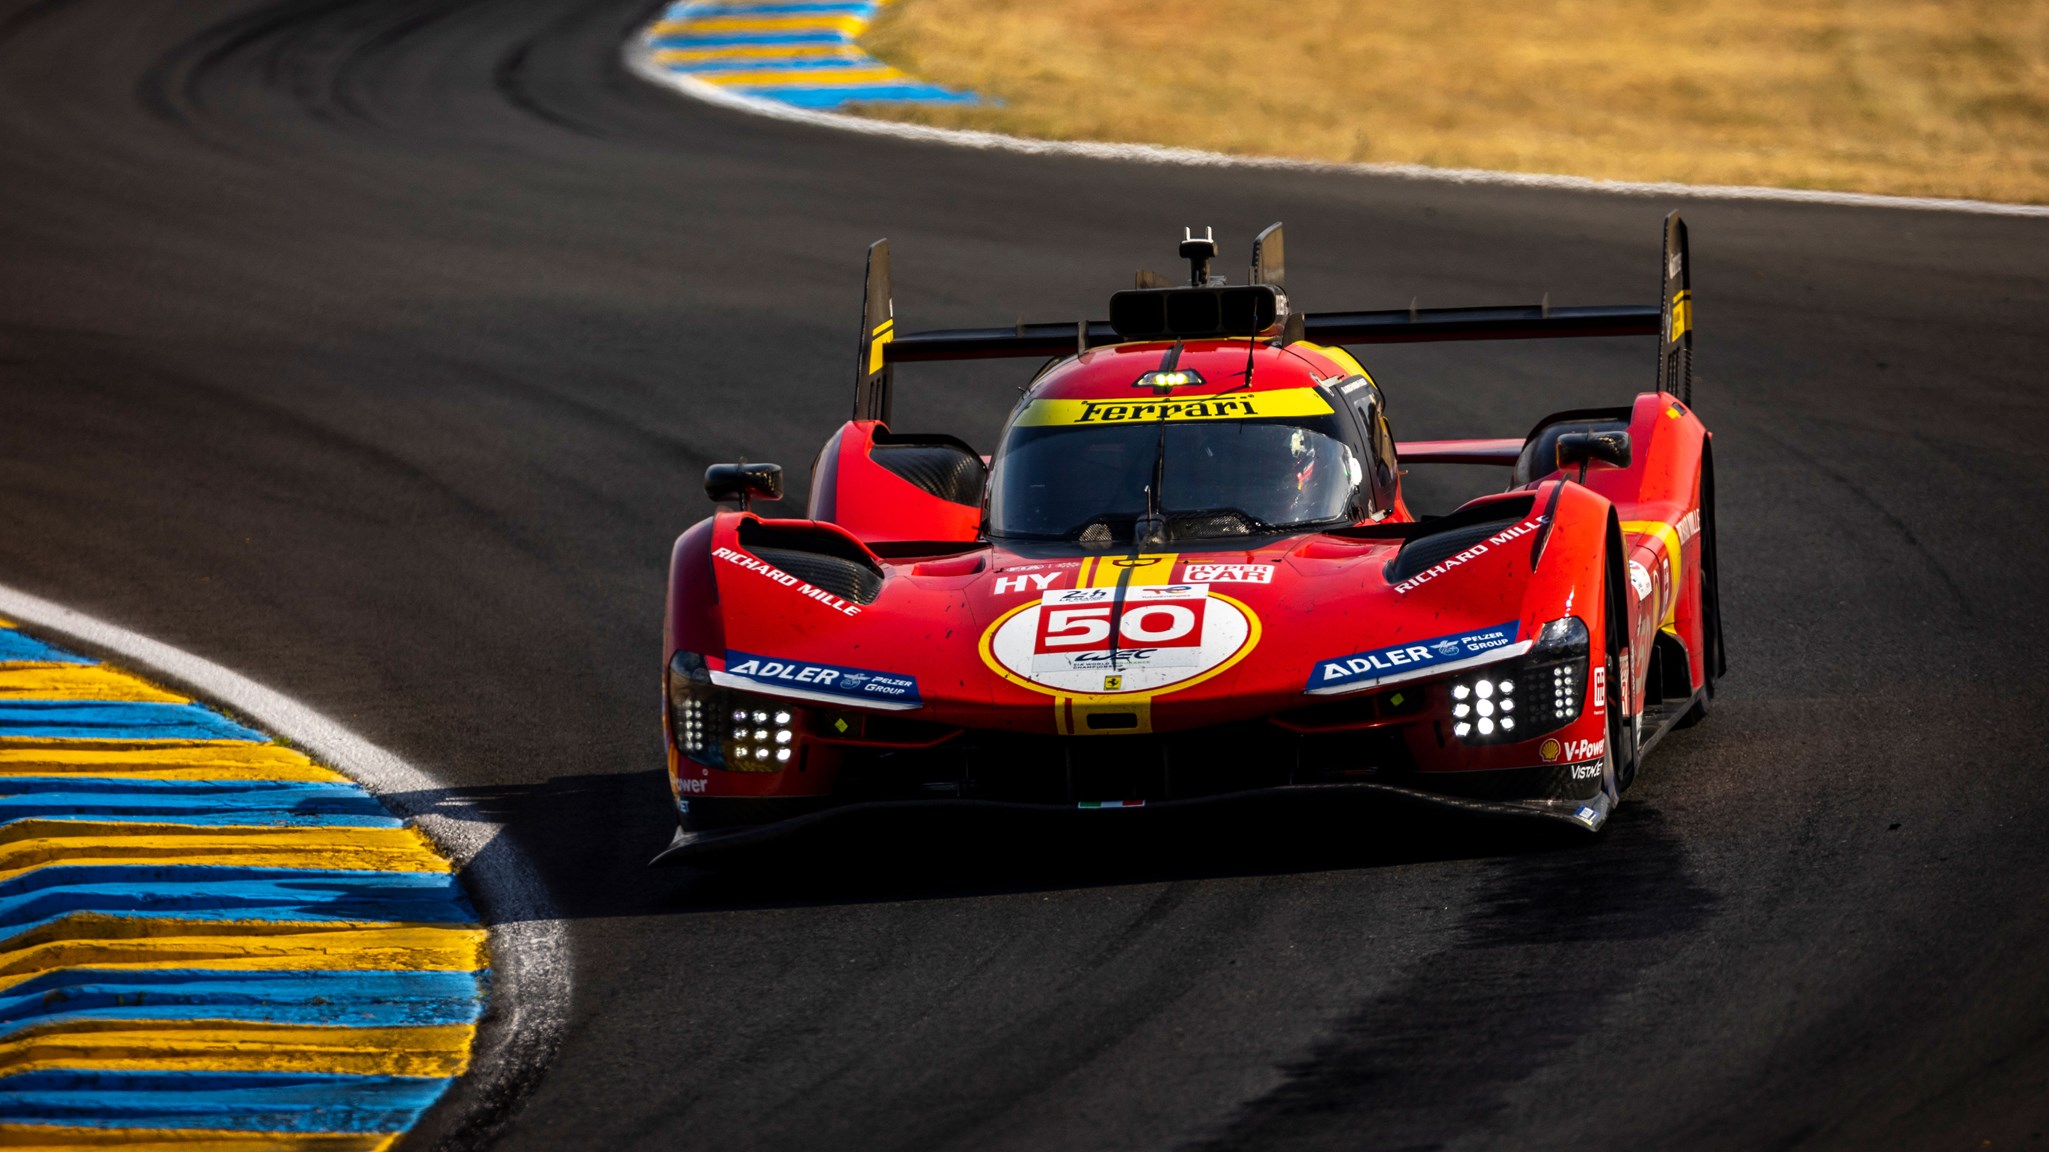 Ferrari on pole for Le Mans 2023: a race preview